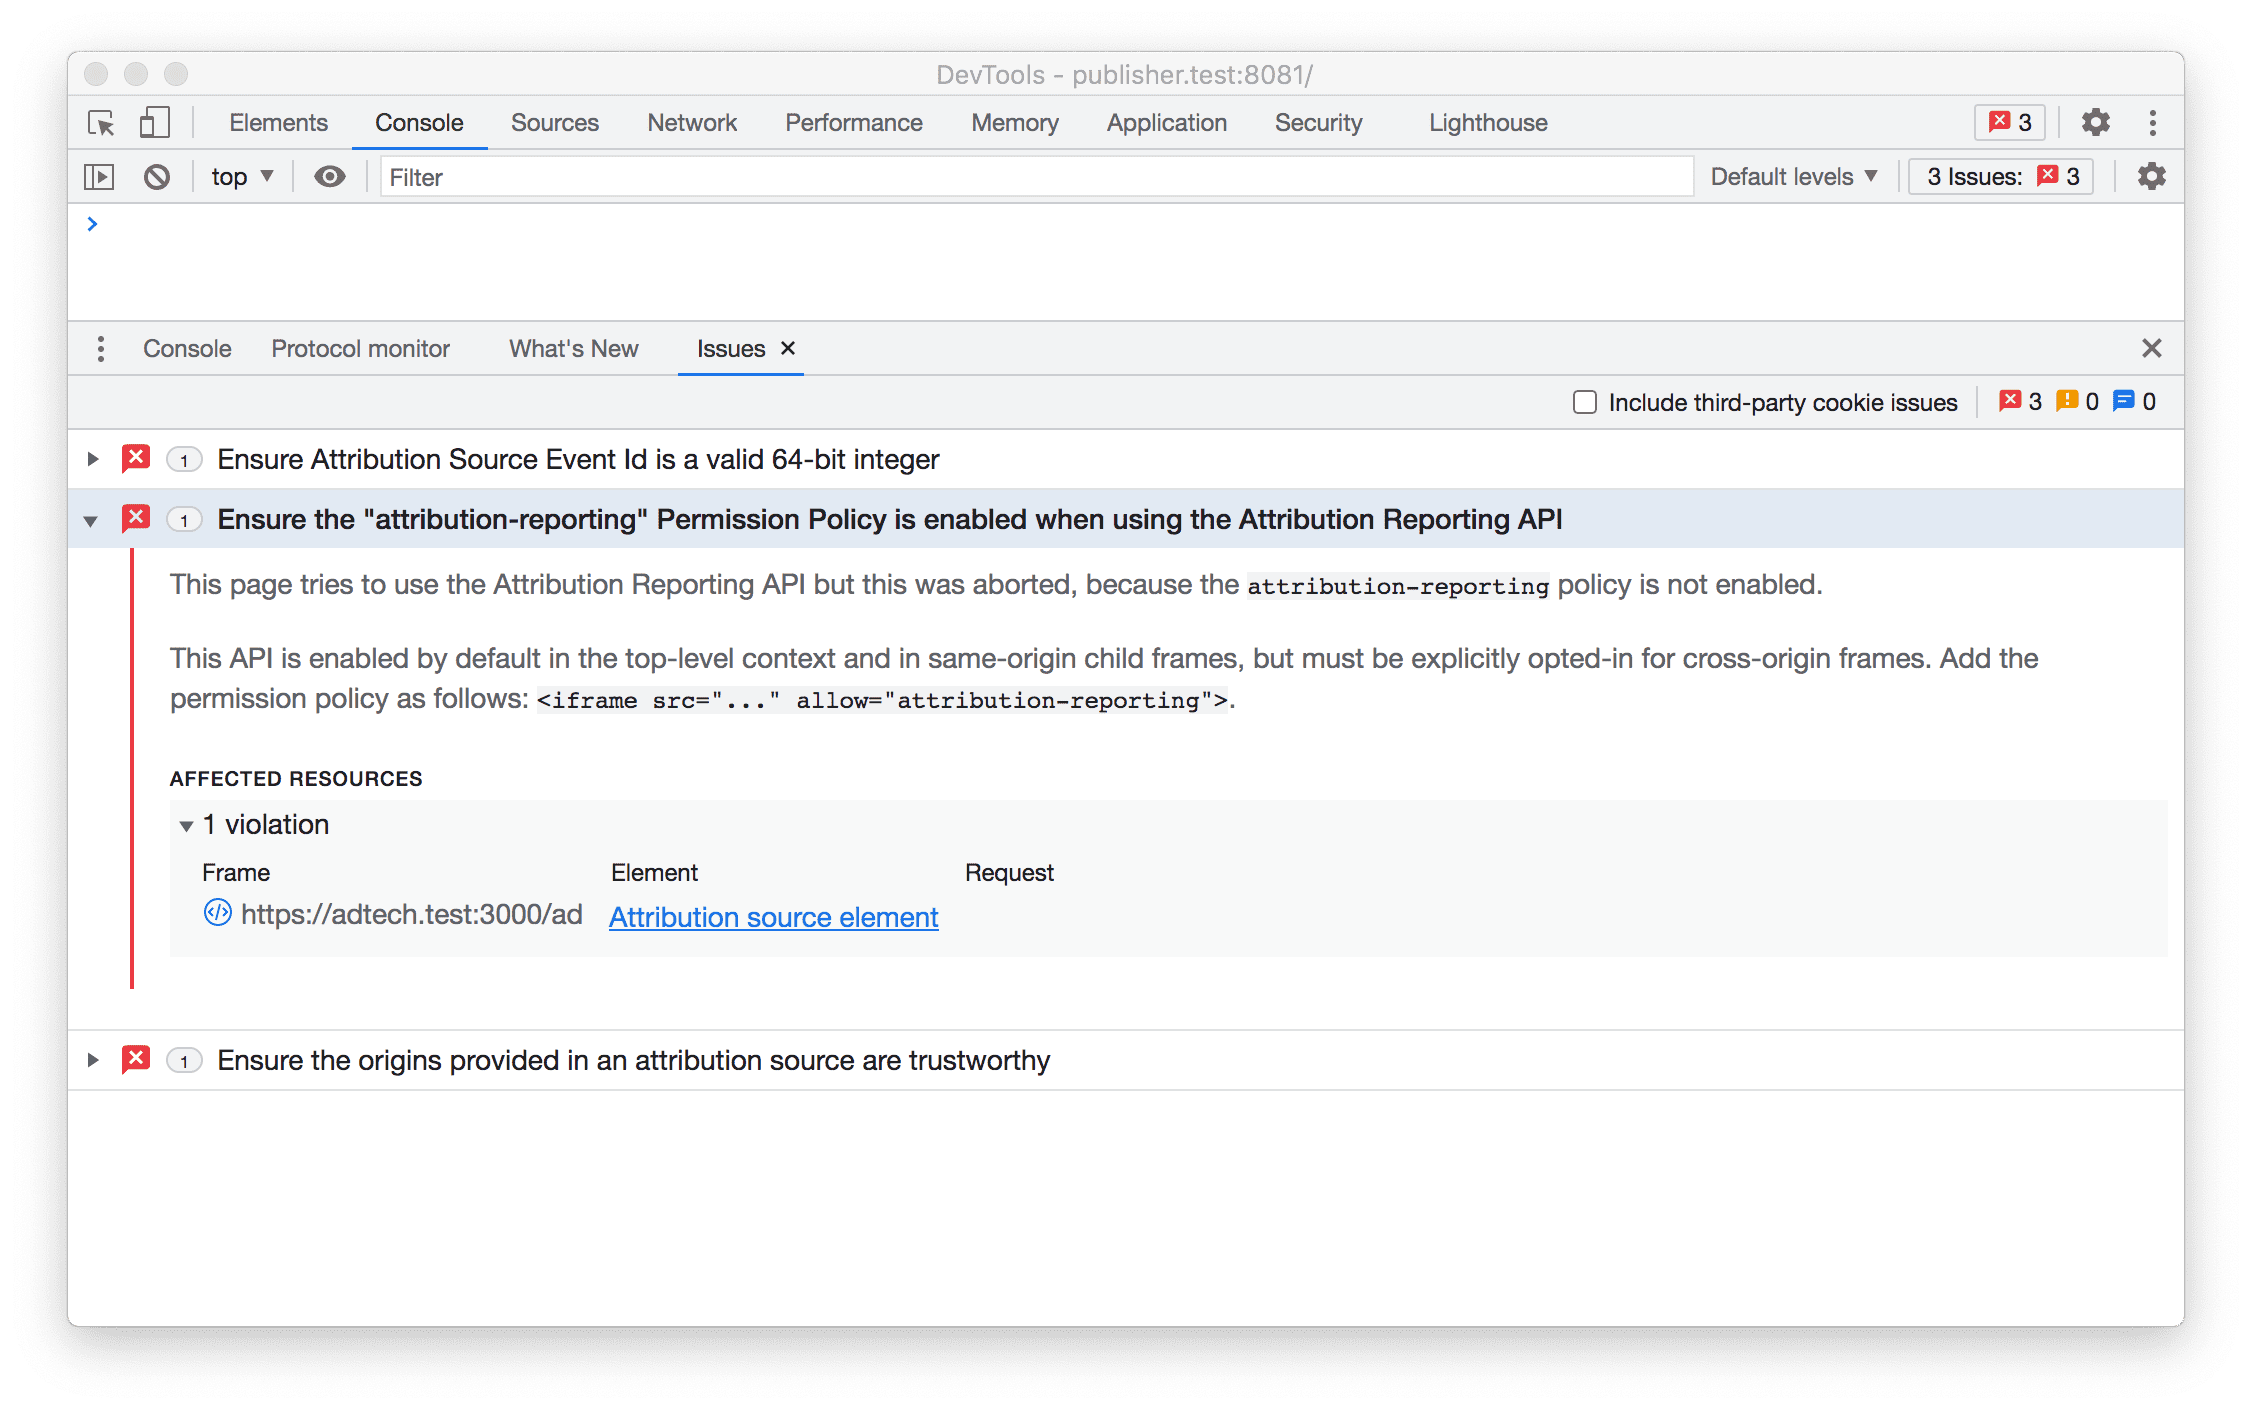 Captura de tela do DevTools mostrando problemas da API Attribution Reporting